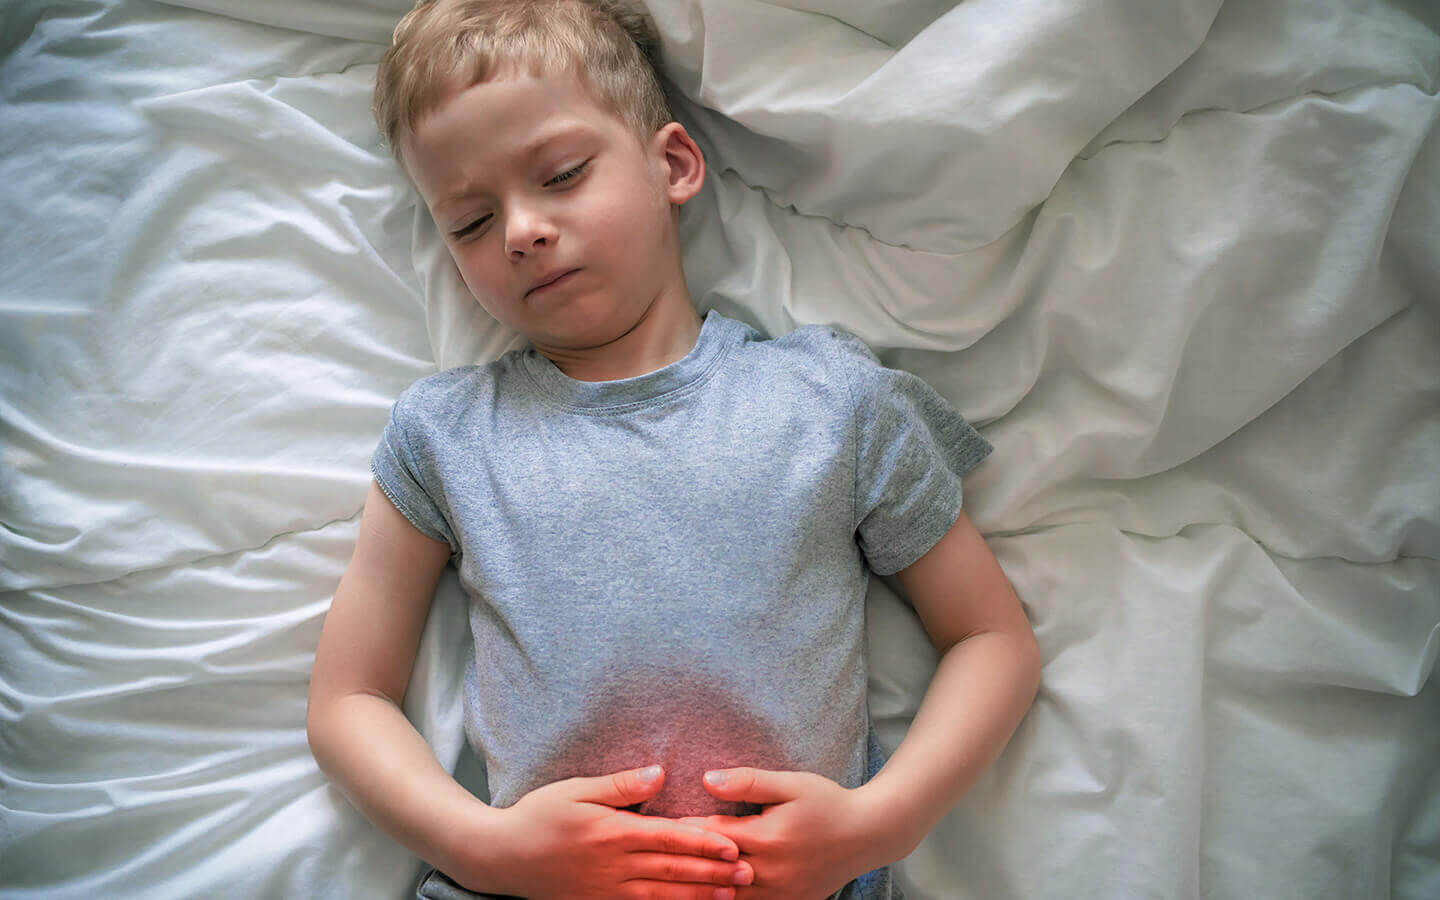 Czym jest ból brzucha?, Ból brzucha u dziecka